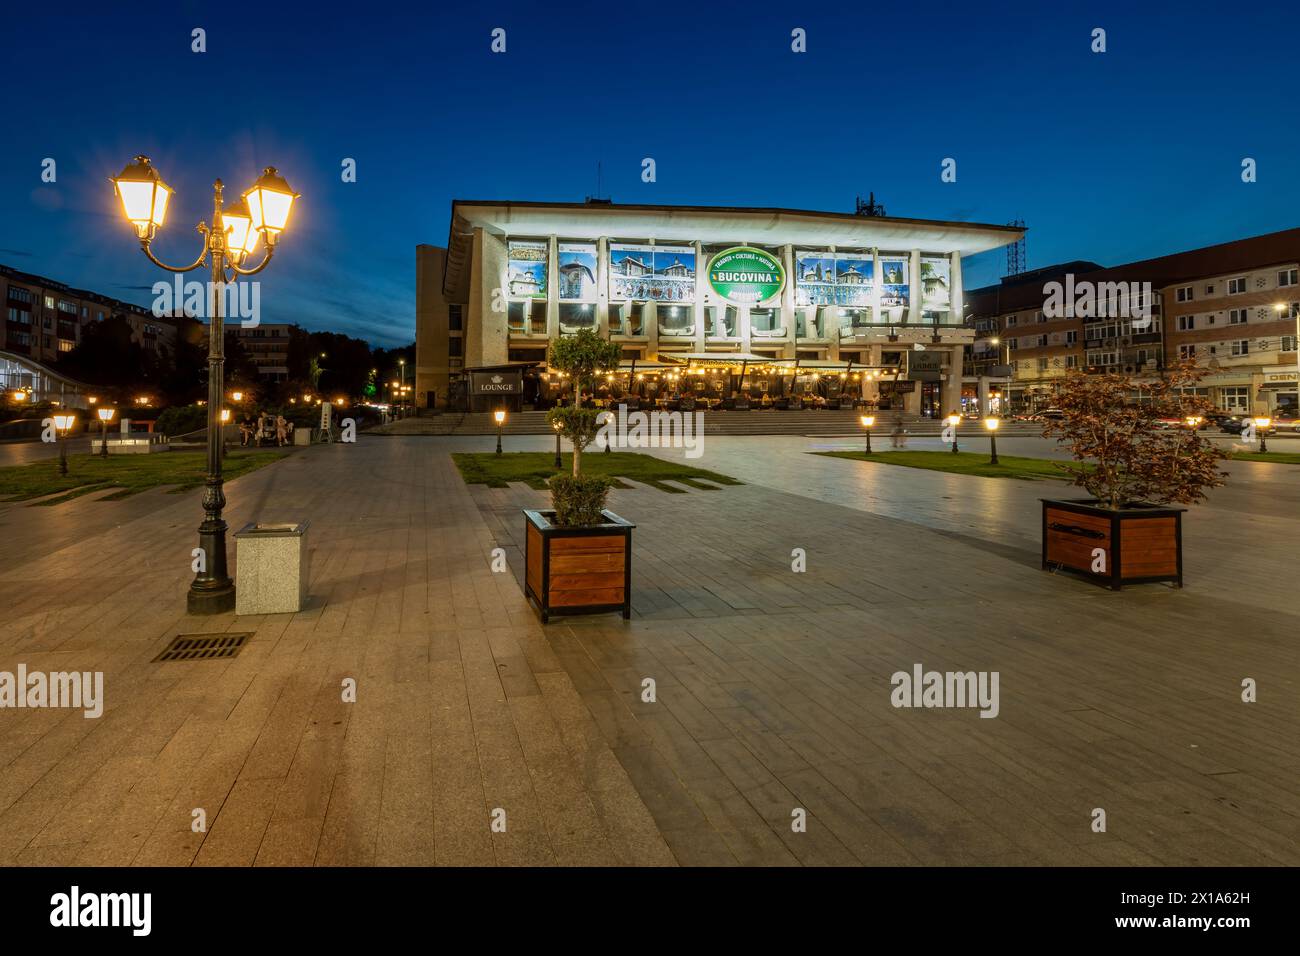 La ville de Suceava en Roumanie Banque D'Images